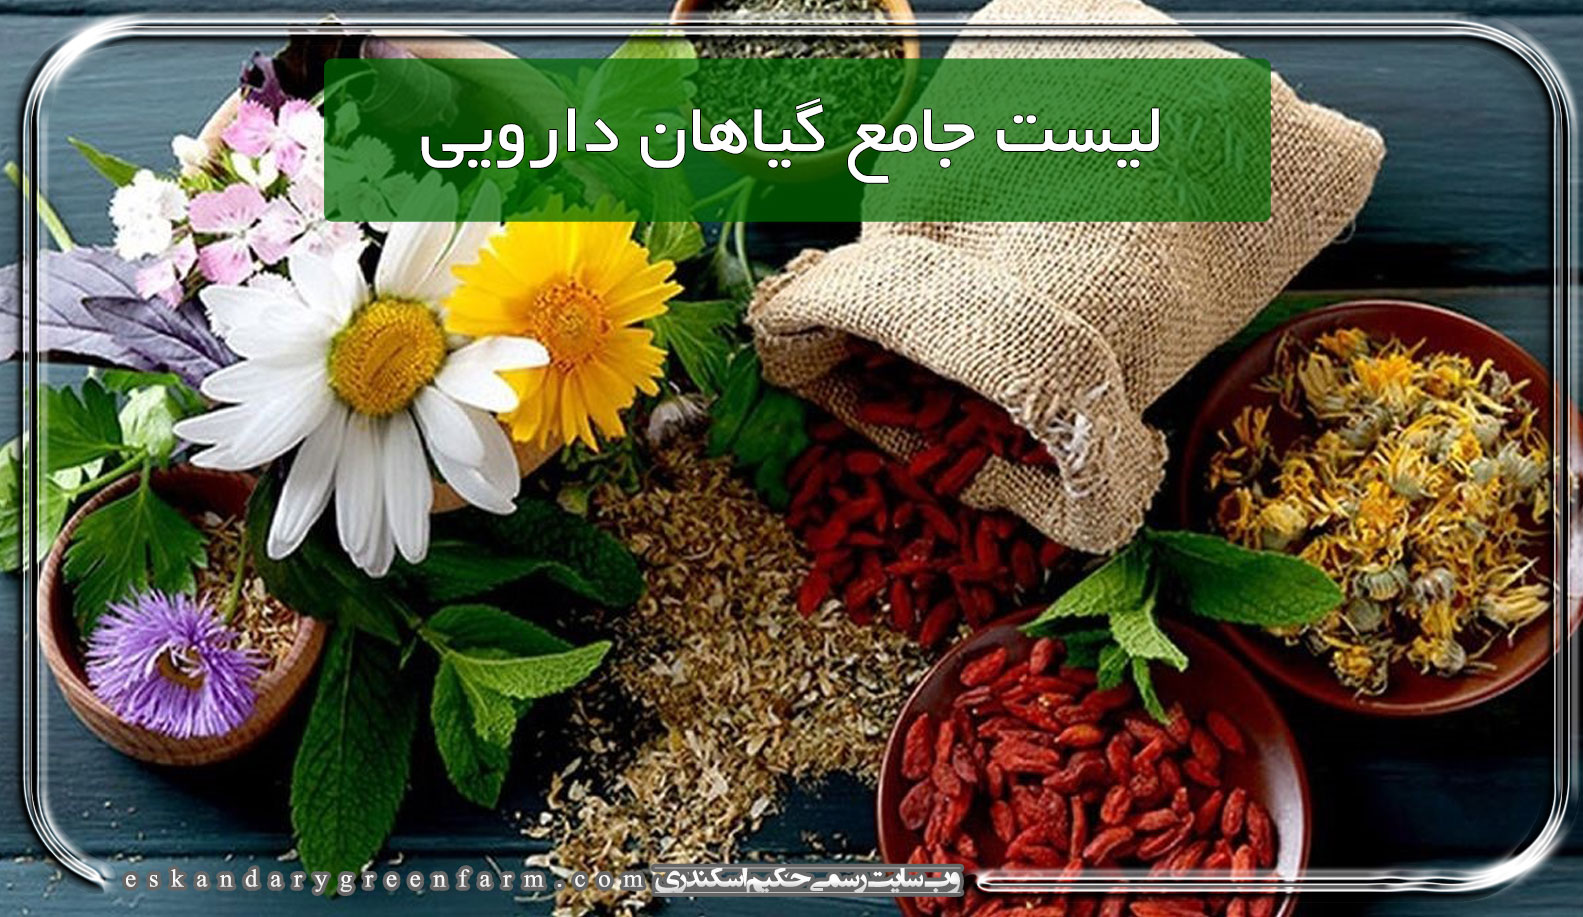 کاملترین و جامع ترین فروشگاه اینترنتی محصولات گیاهی ، طبیعی ، ارگانیک و سالم در ایران